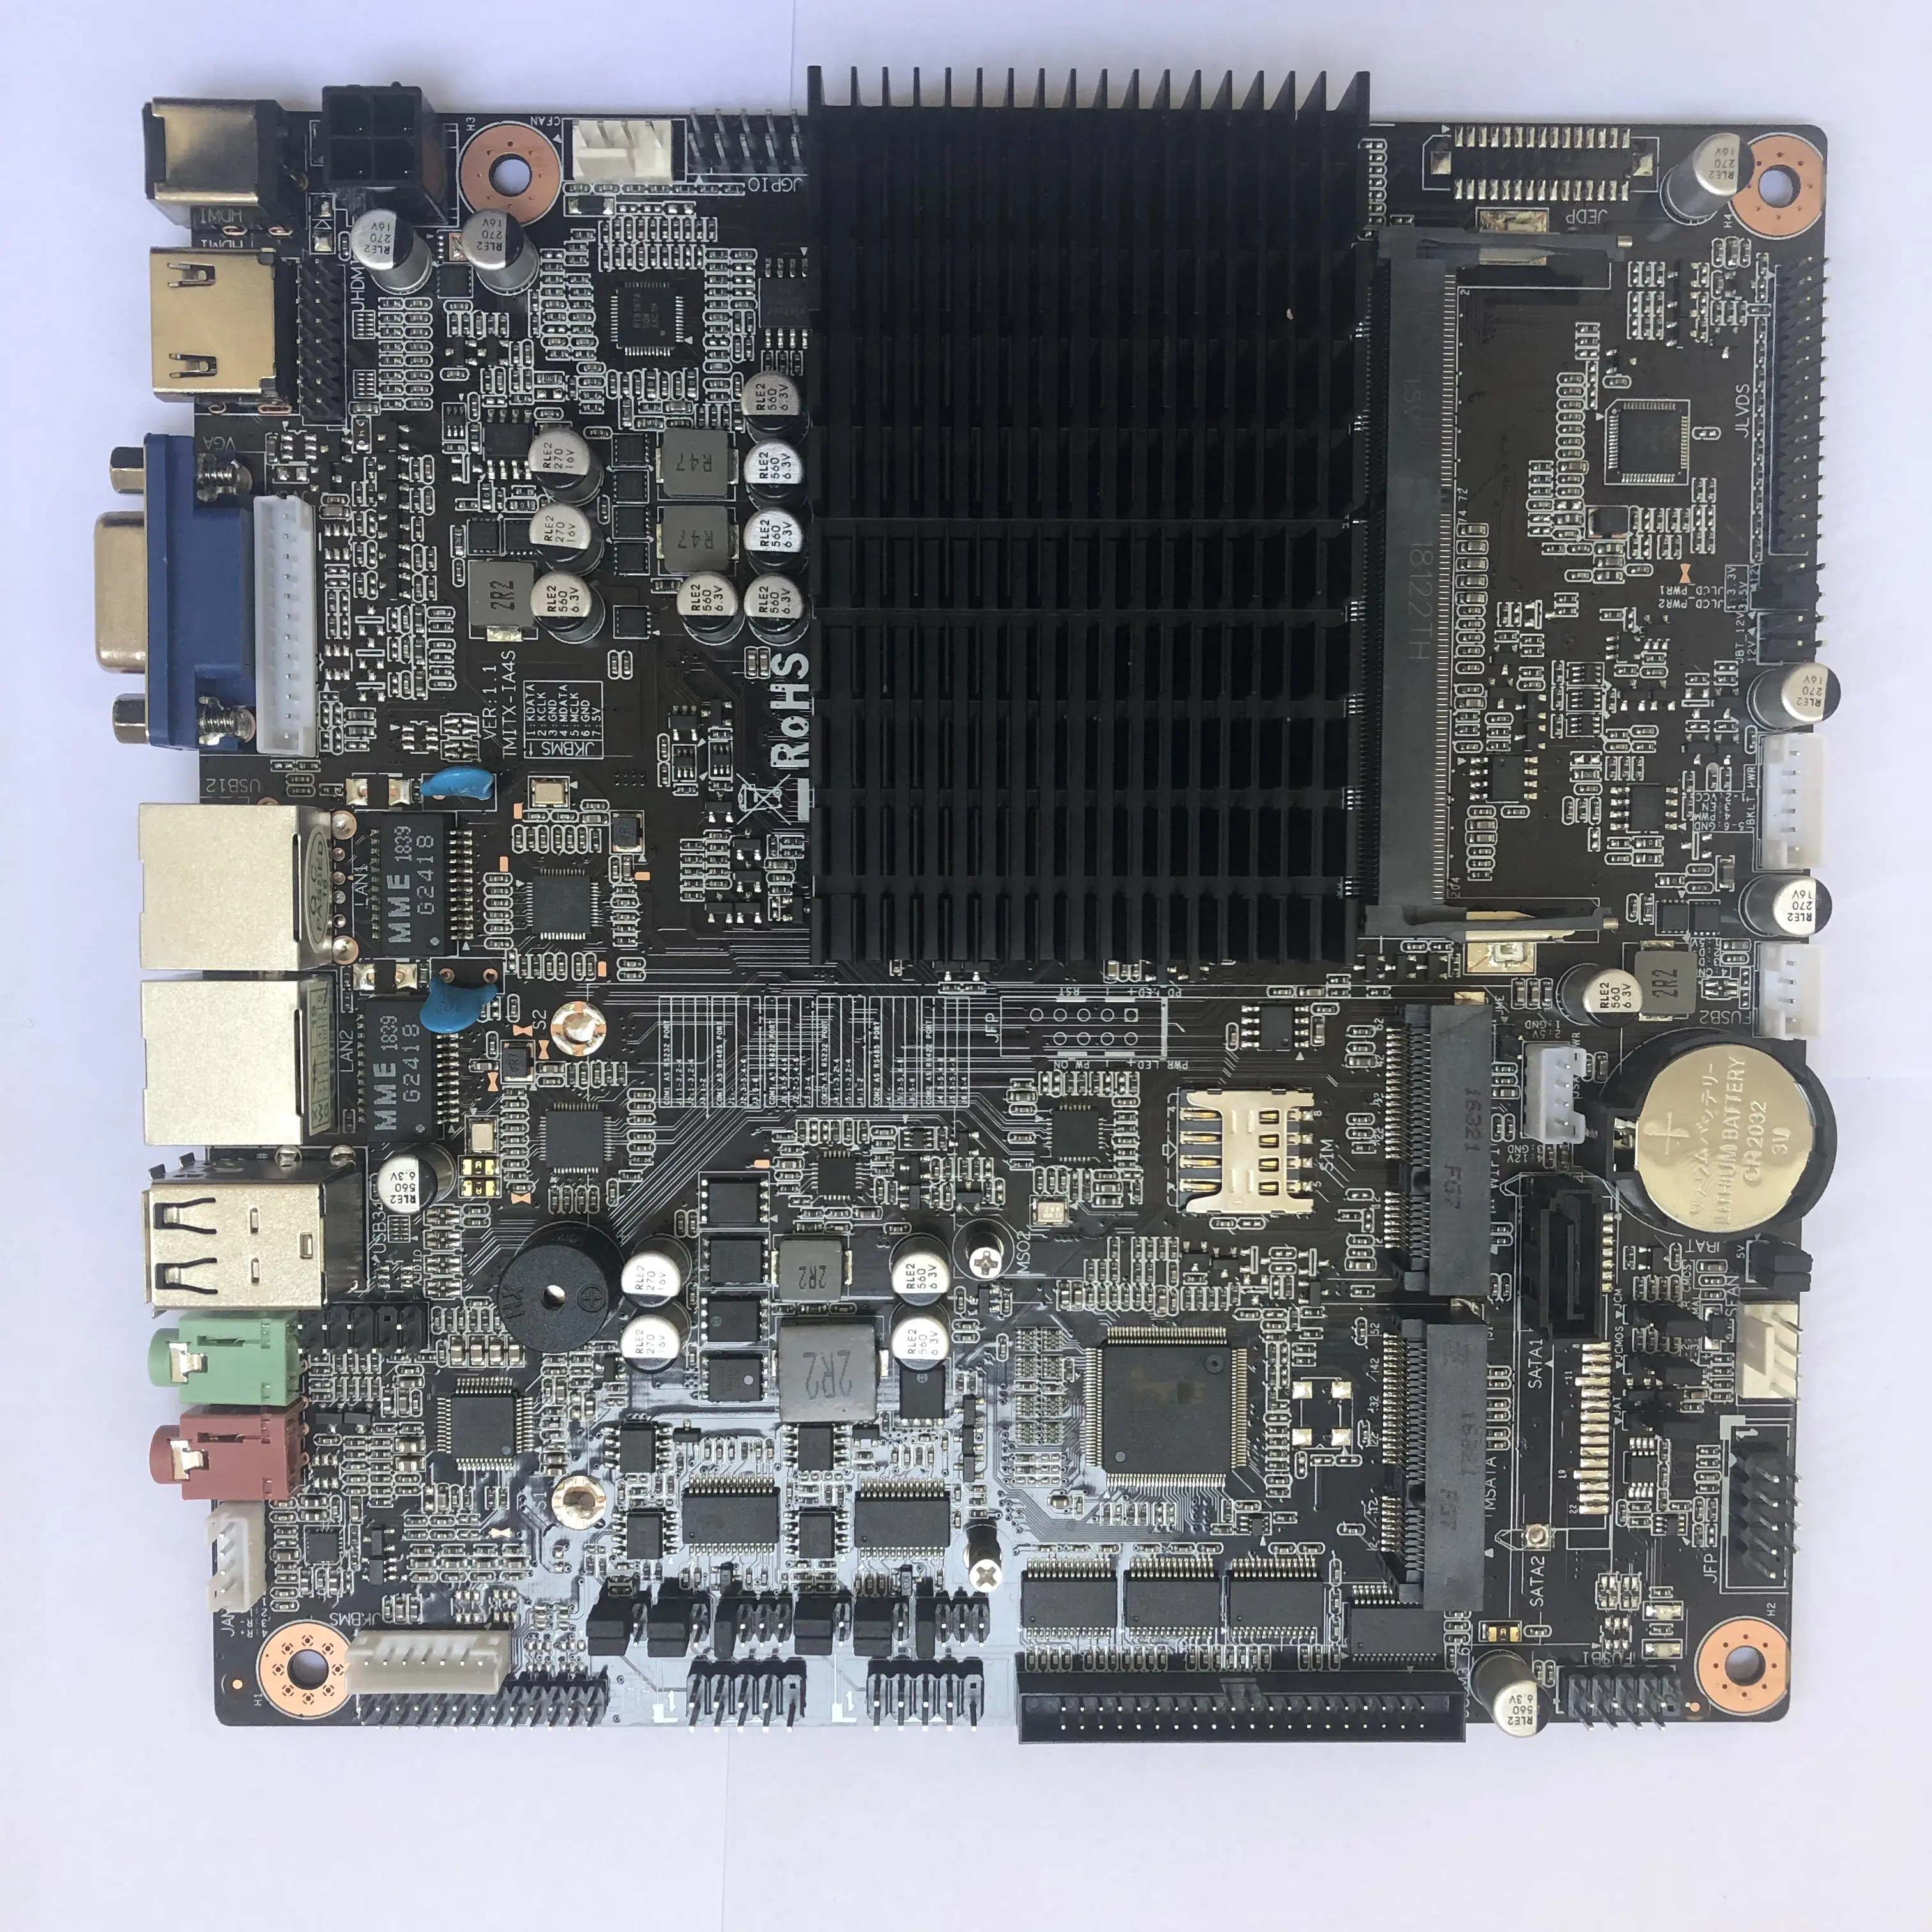 Fanless j1900 processore Quad core LVDS scheda madre mini itx per pc industriale